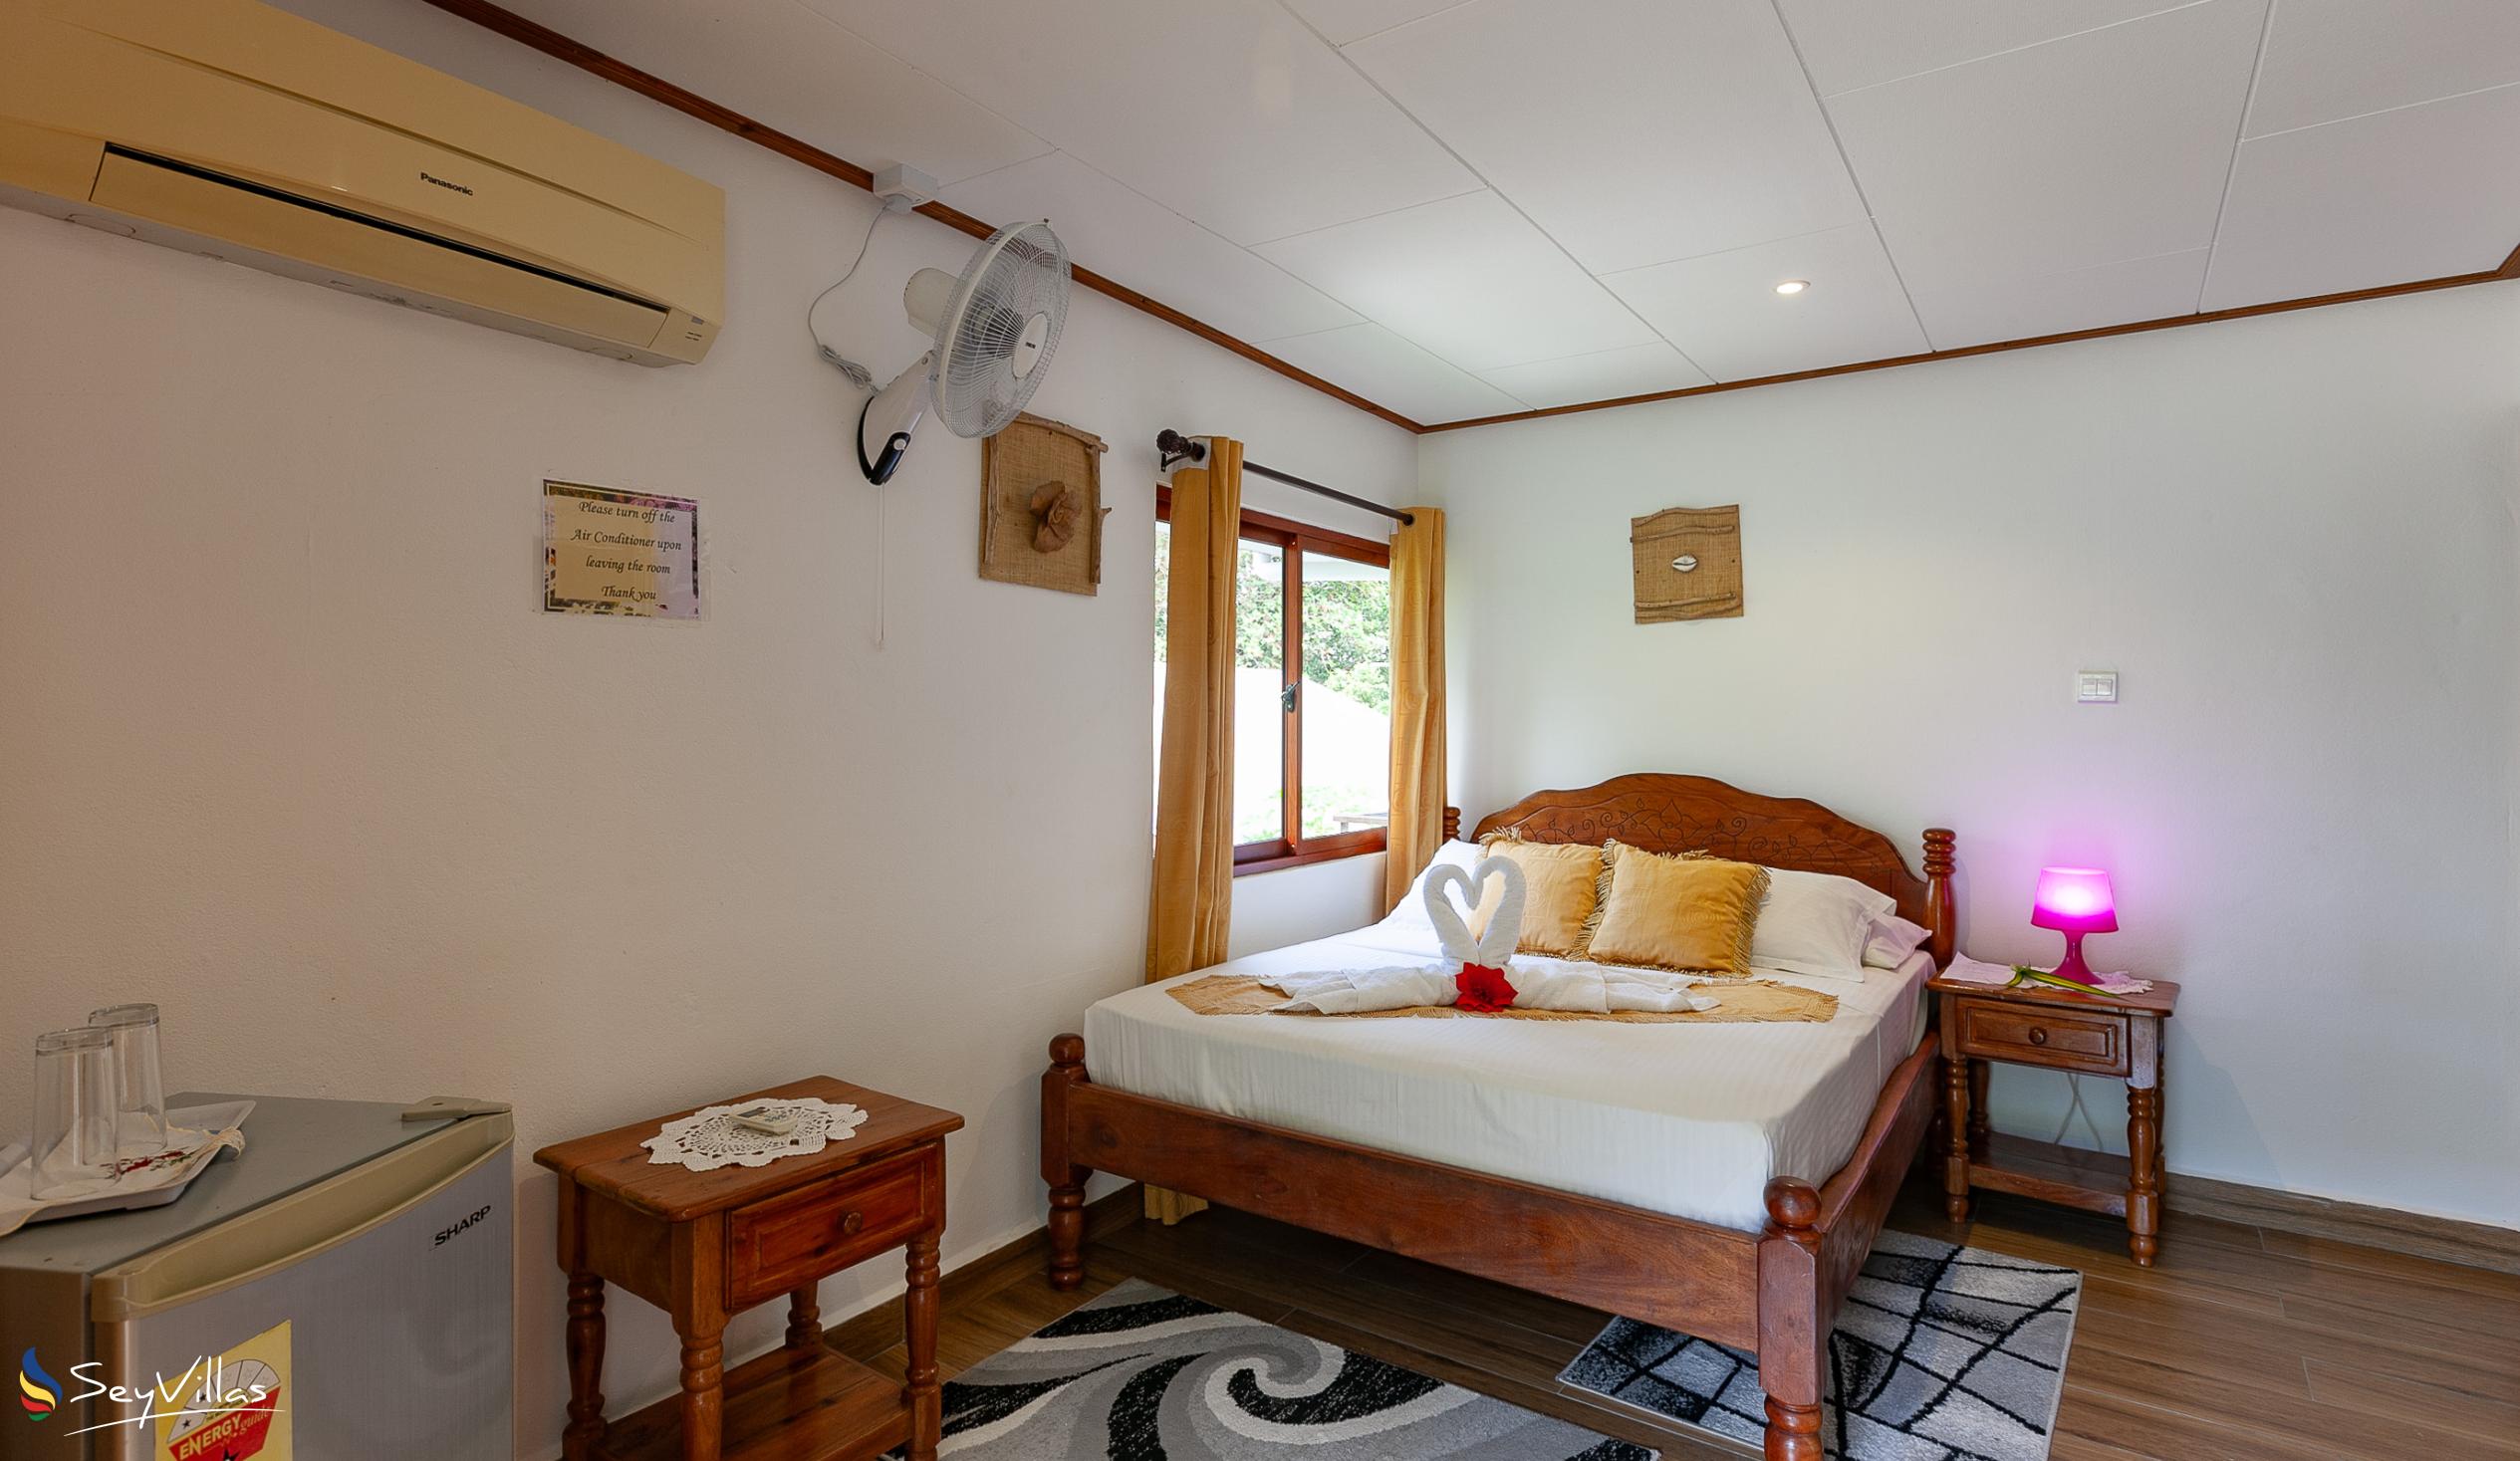 Photo 99: Tannette's Villa - Deluxe Room - La Digue (Seychelles)